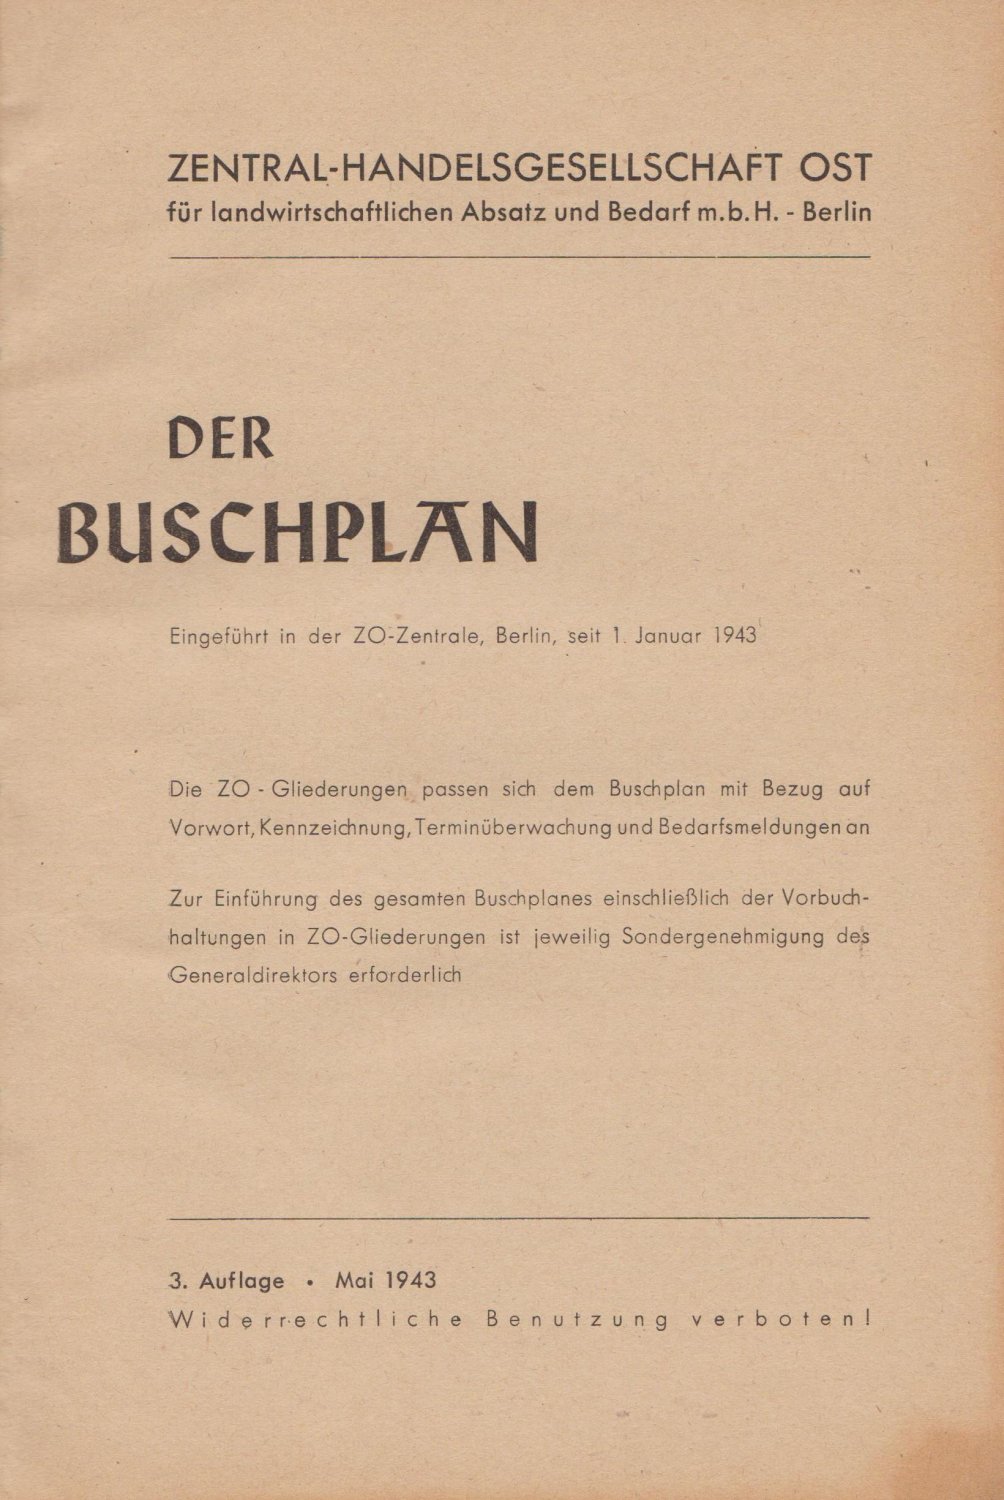 ZENTRAL-HANDELSGESELLSCHAFT OST FÜR LANDWIRTSCHAFTLICHEN ABSATZ UND BEDARF m.b.H. BERLIN:  Der Buschplan. Eingeführt in der ZO-Zentrale, Berlin, seit 1. Januar 1943. Die ZO-Gliederungen passen sich dem Buschplan mit Bezug auf Vorwort, Kennzeichnung, Terminüberwachung und Bedarfsmeldungen an... 